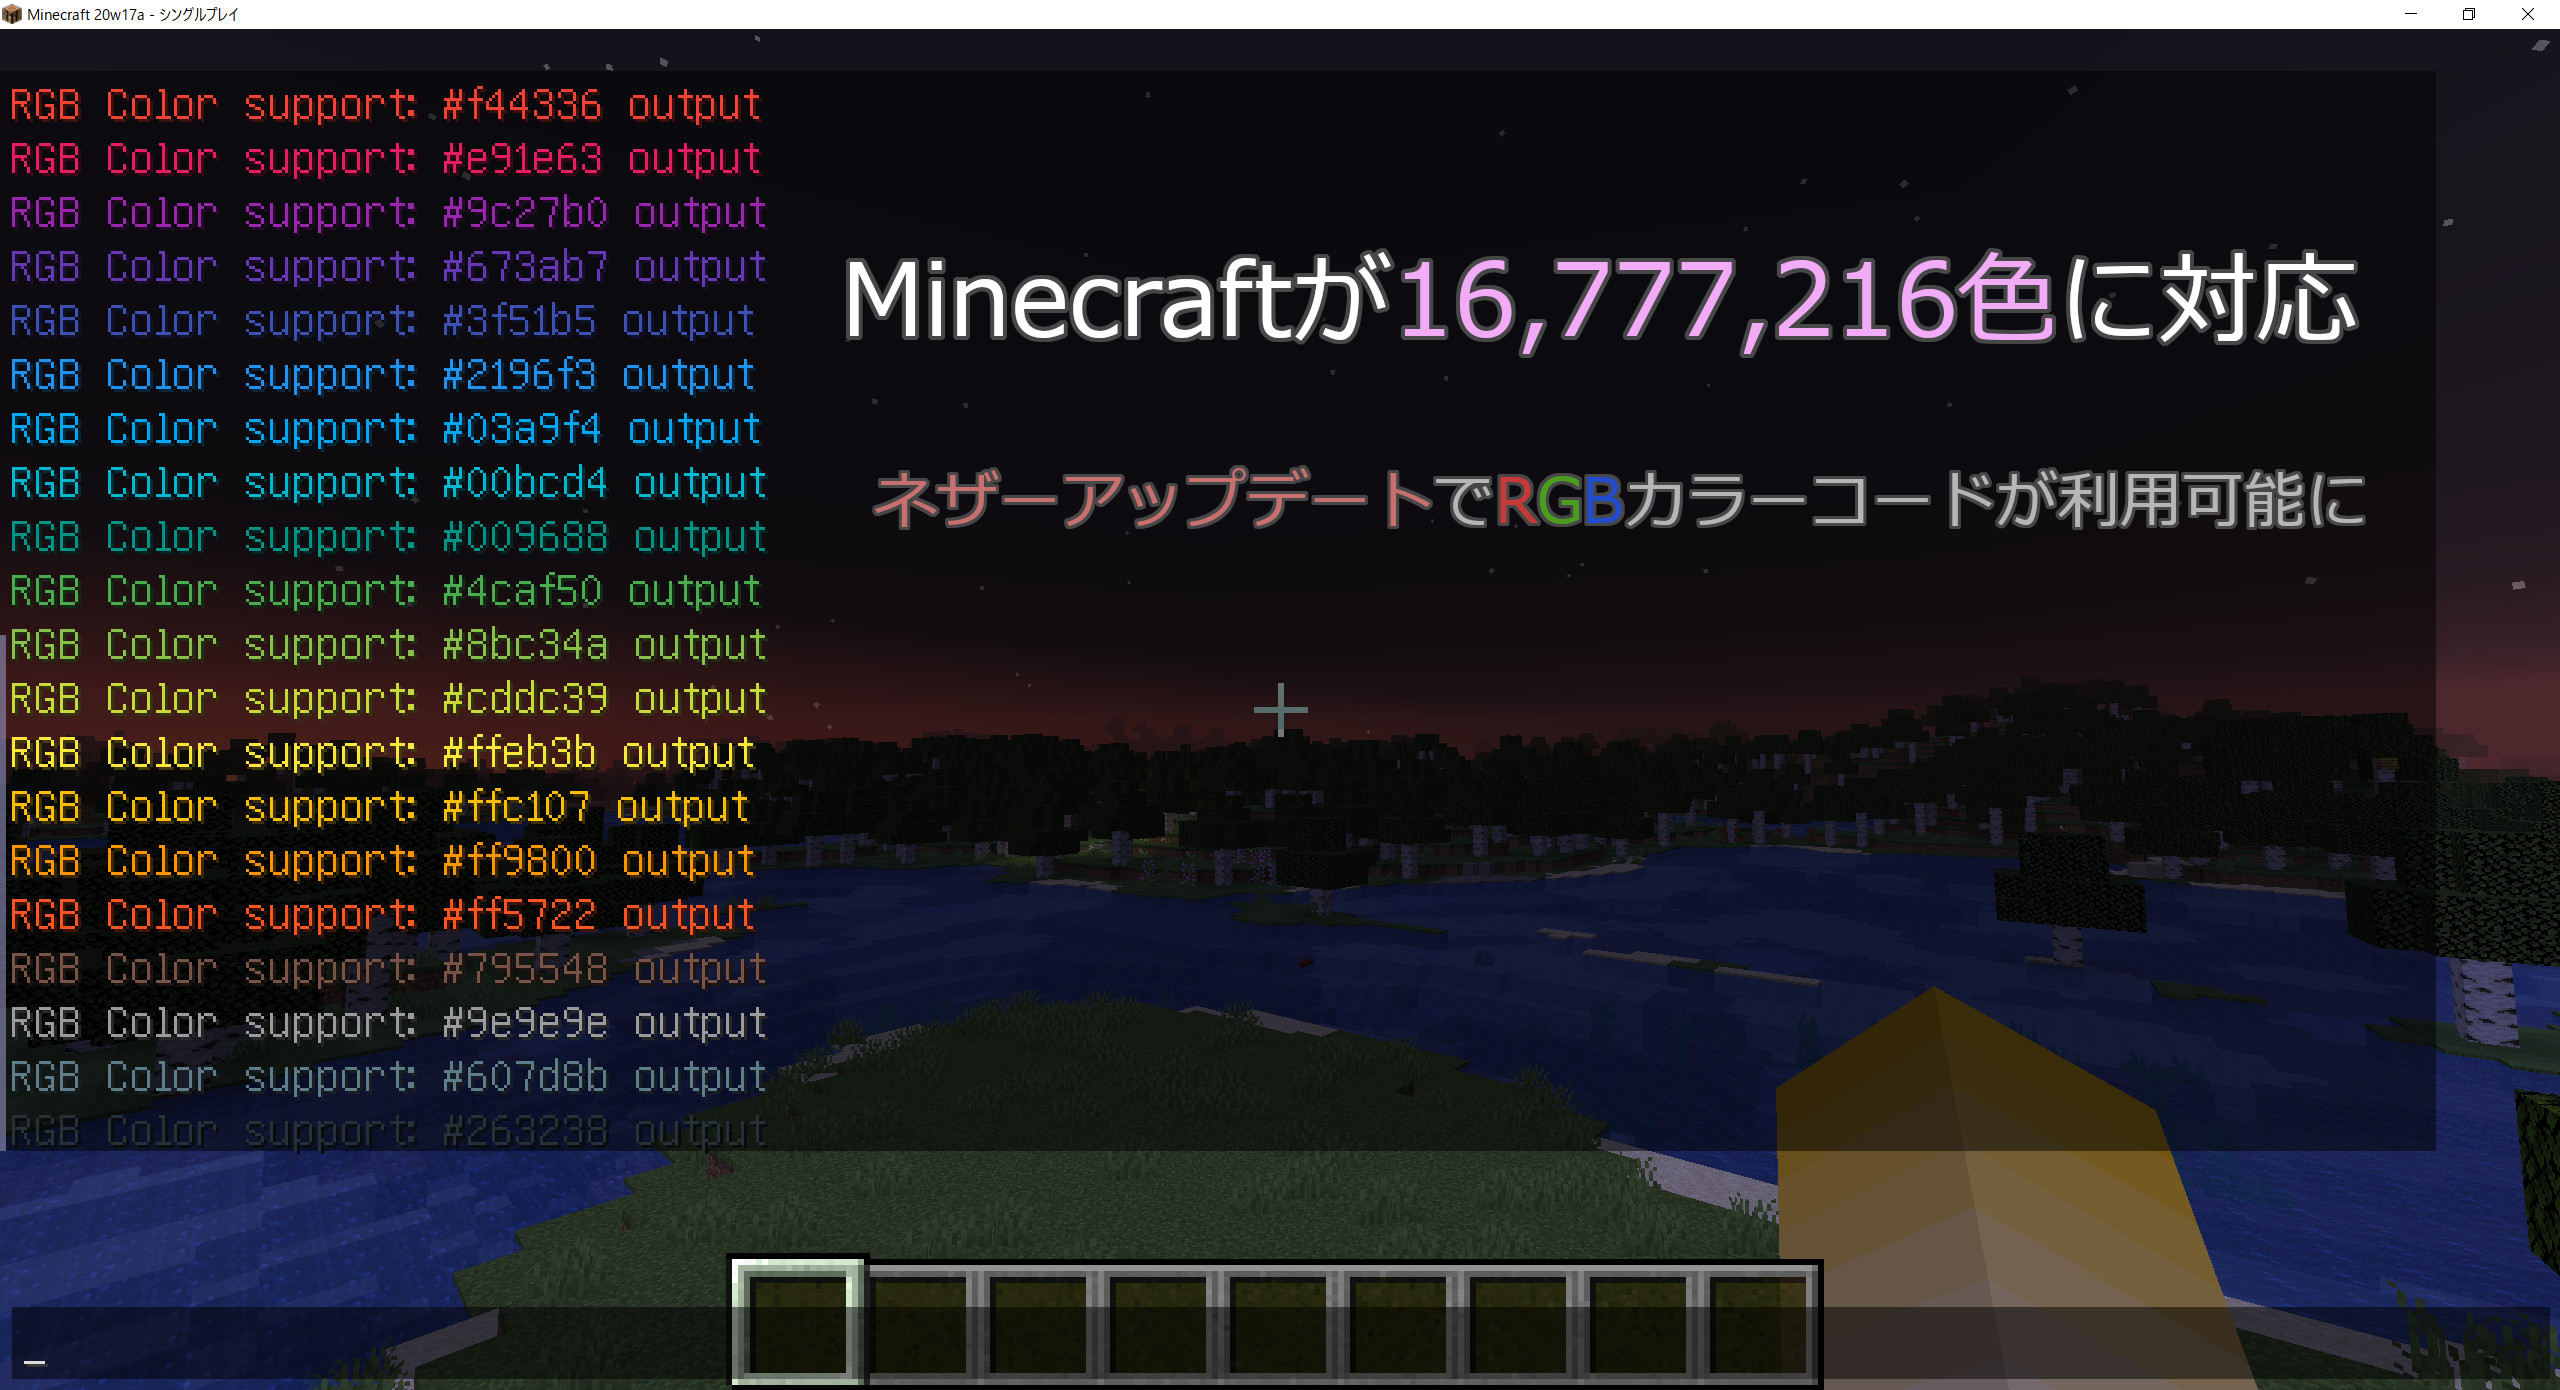 MinecraftがRGBカラーコードをサポート 約1700万色表現可能に